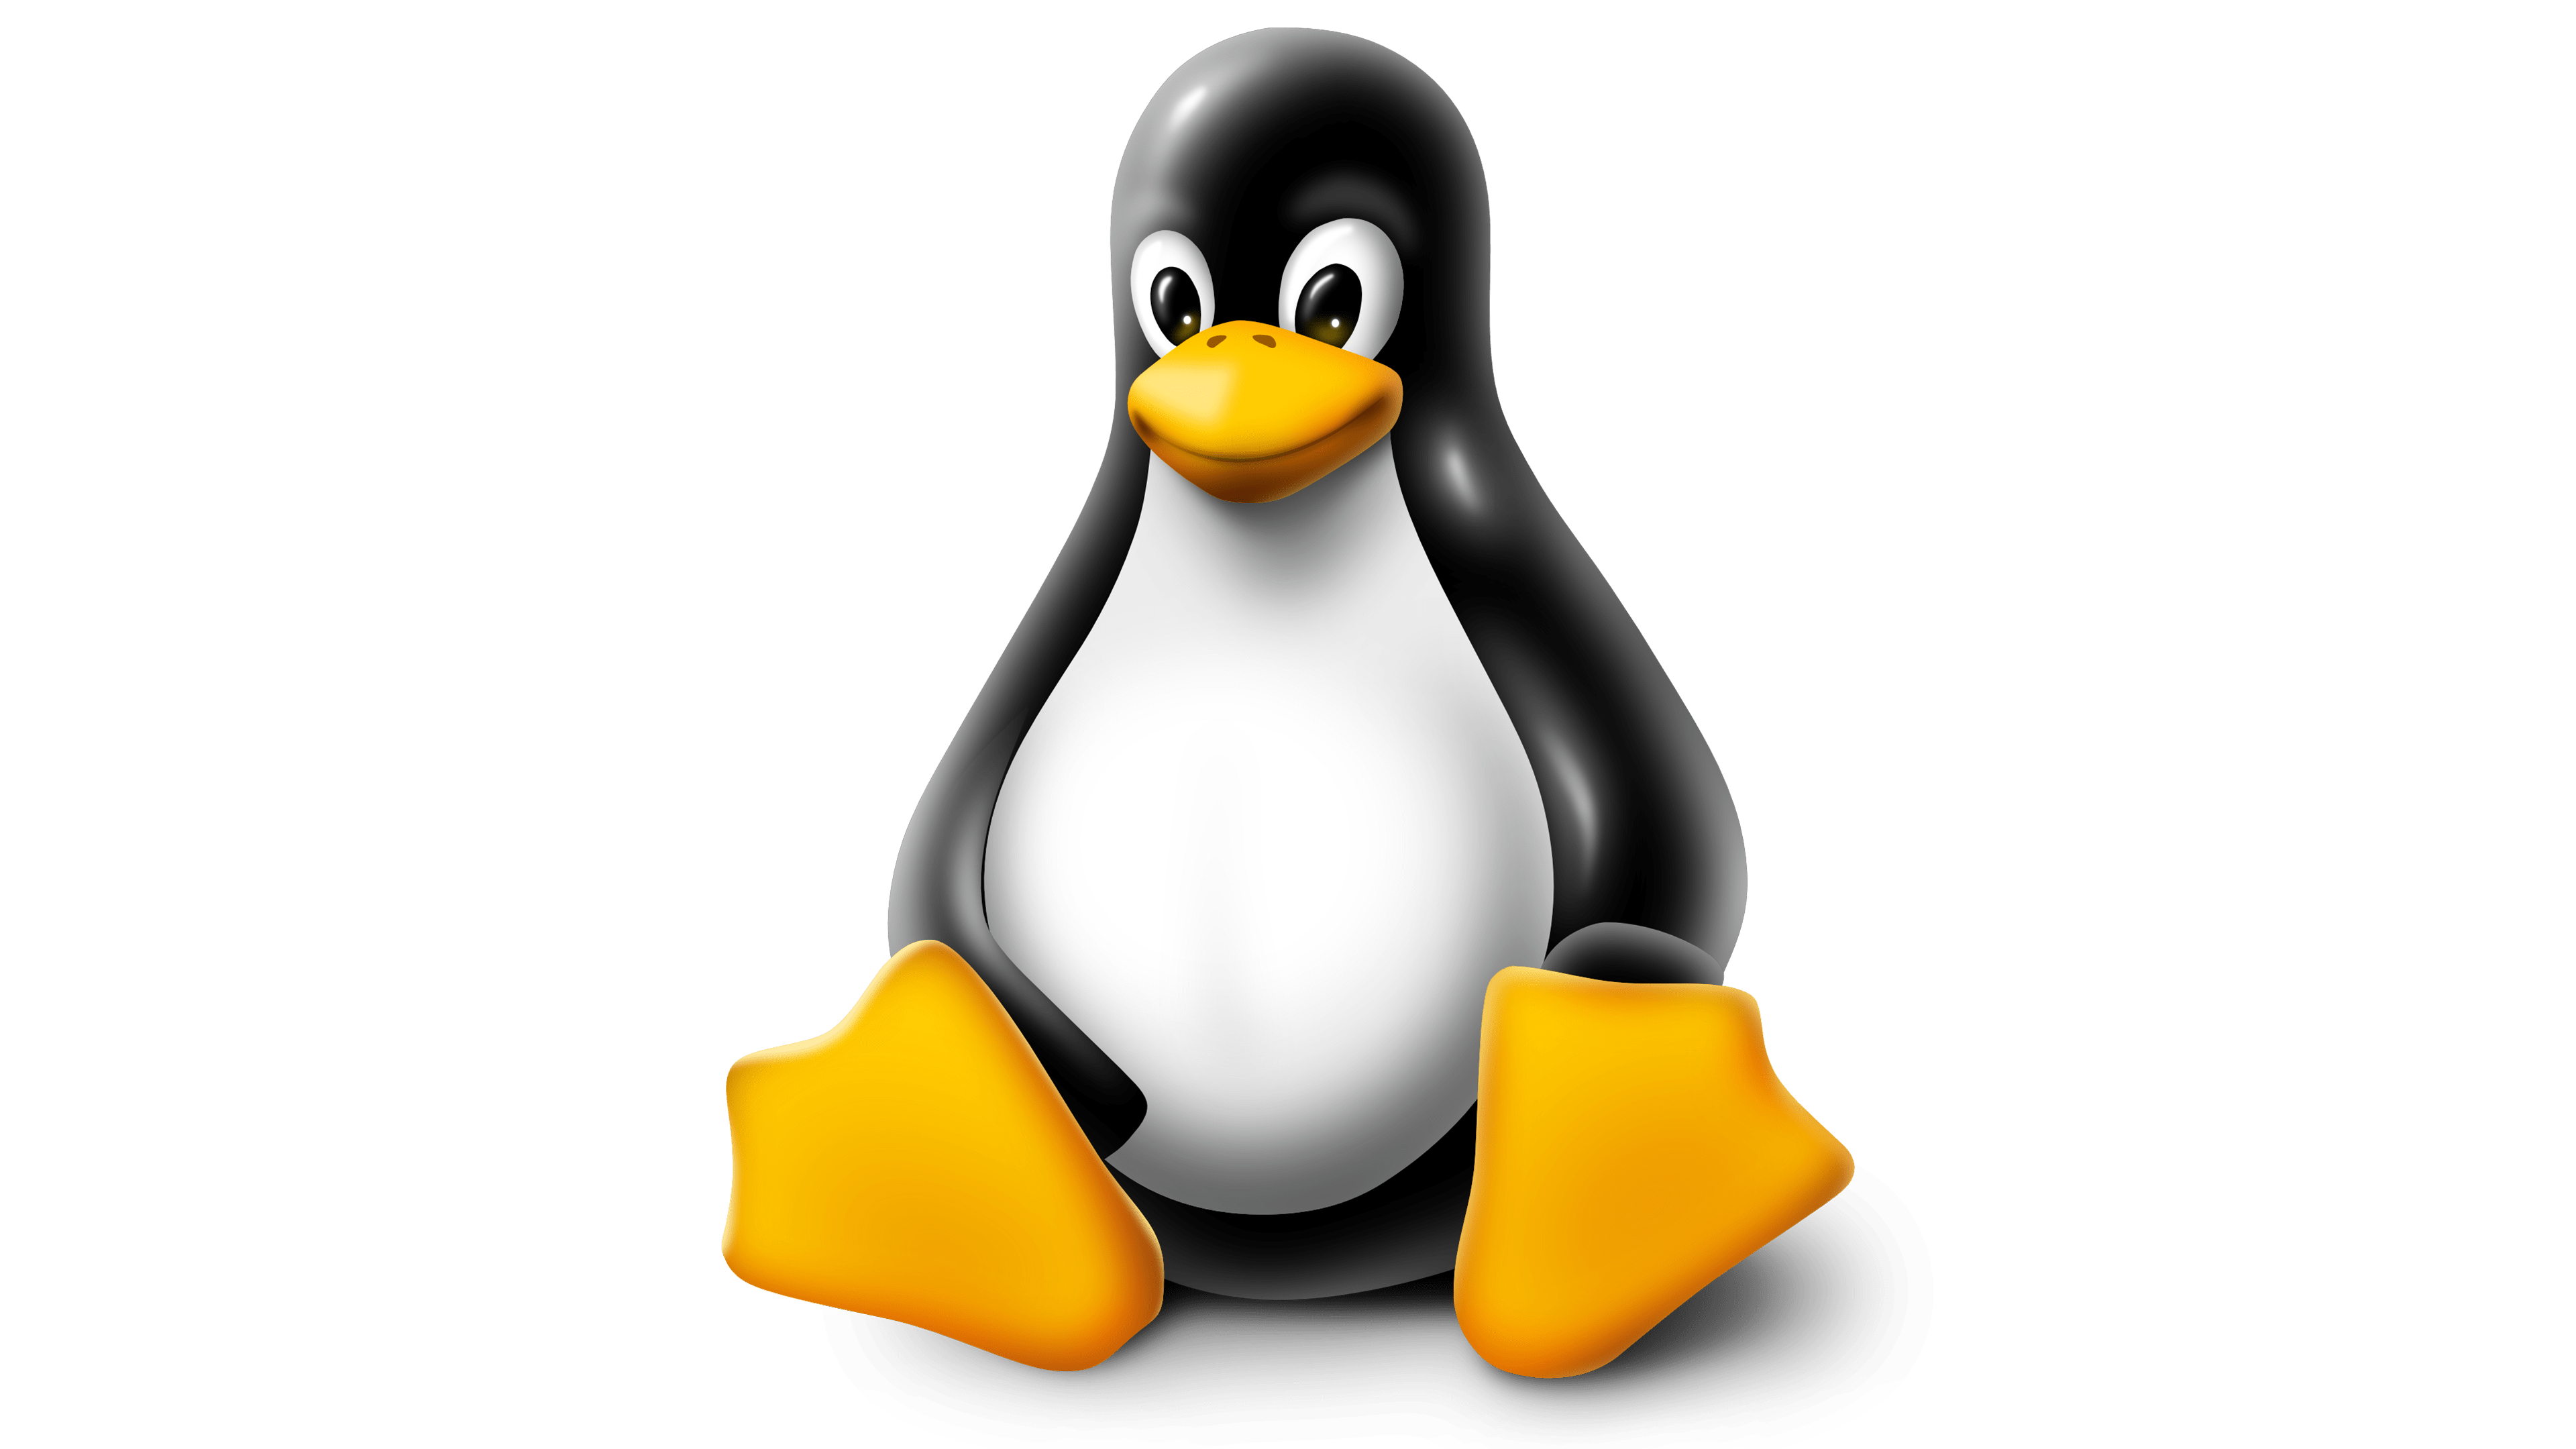 Distro: Linux 